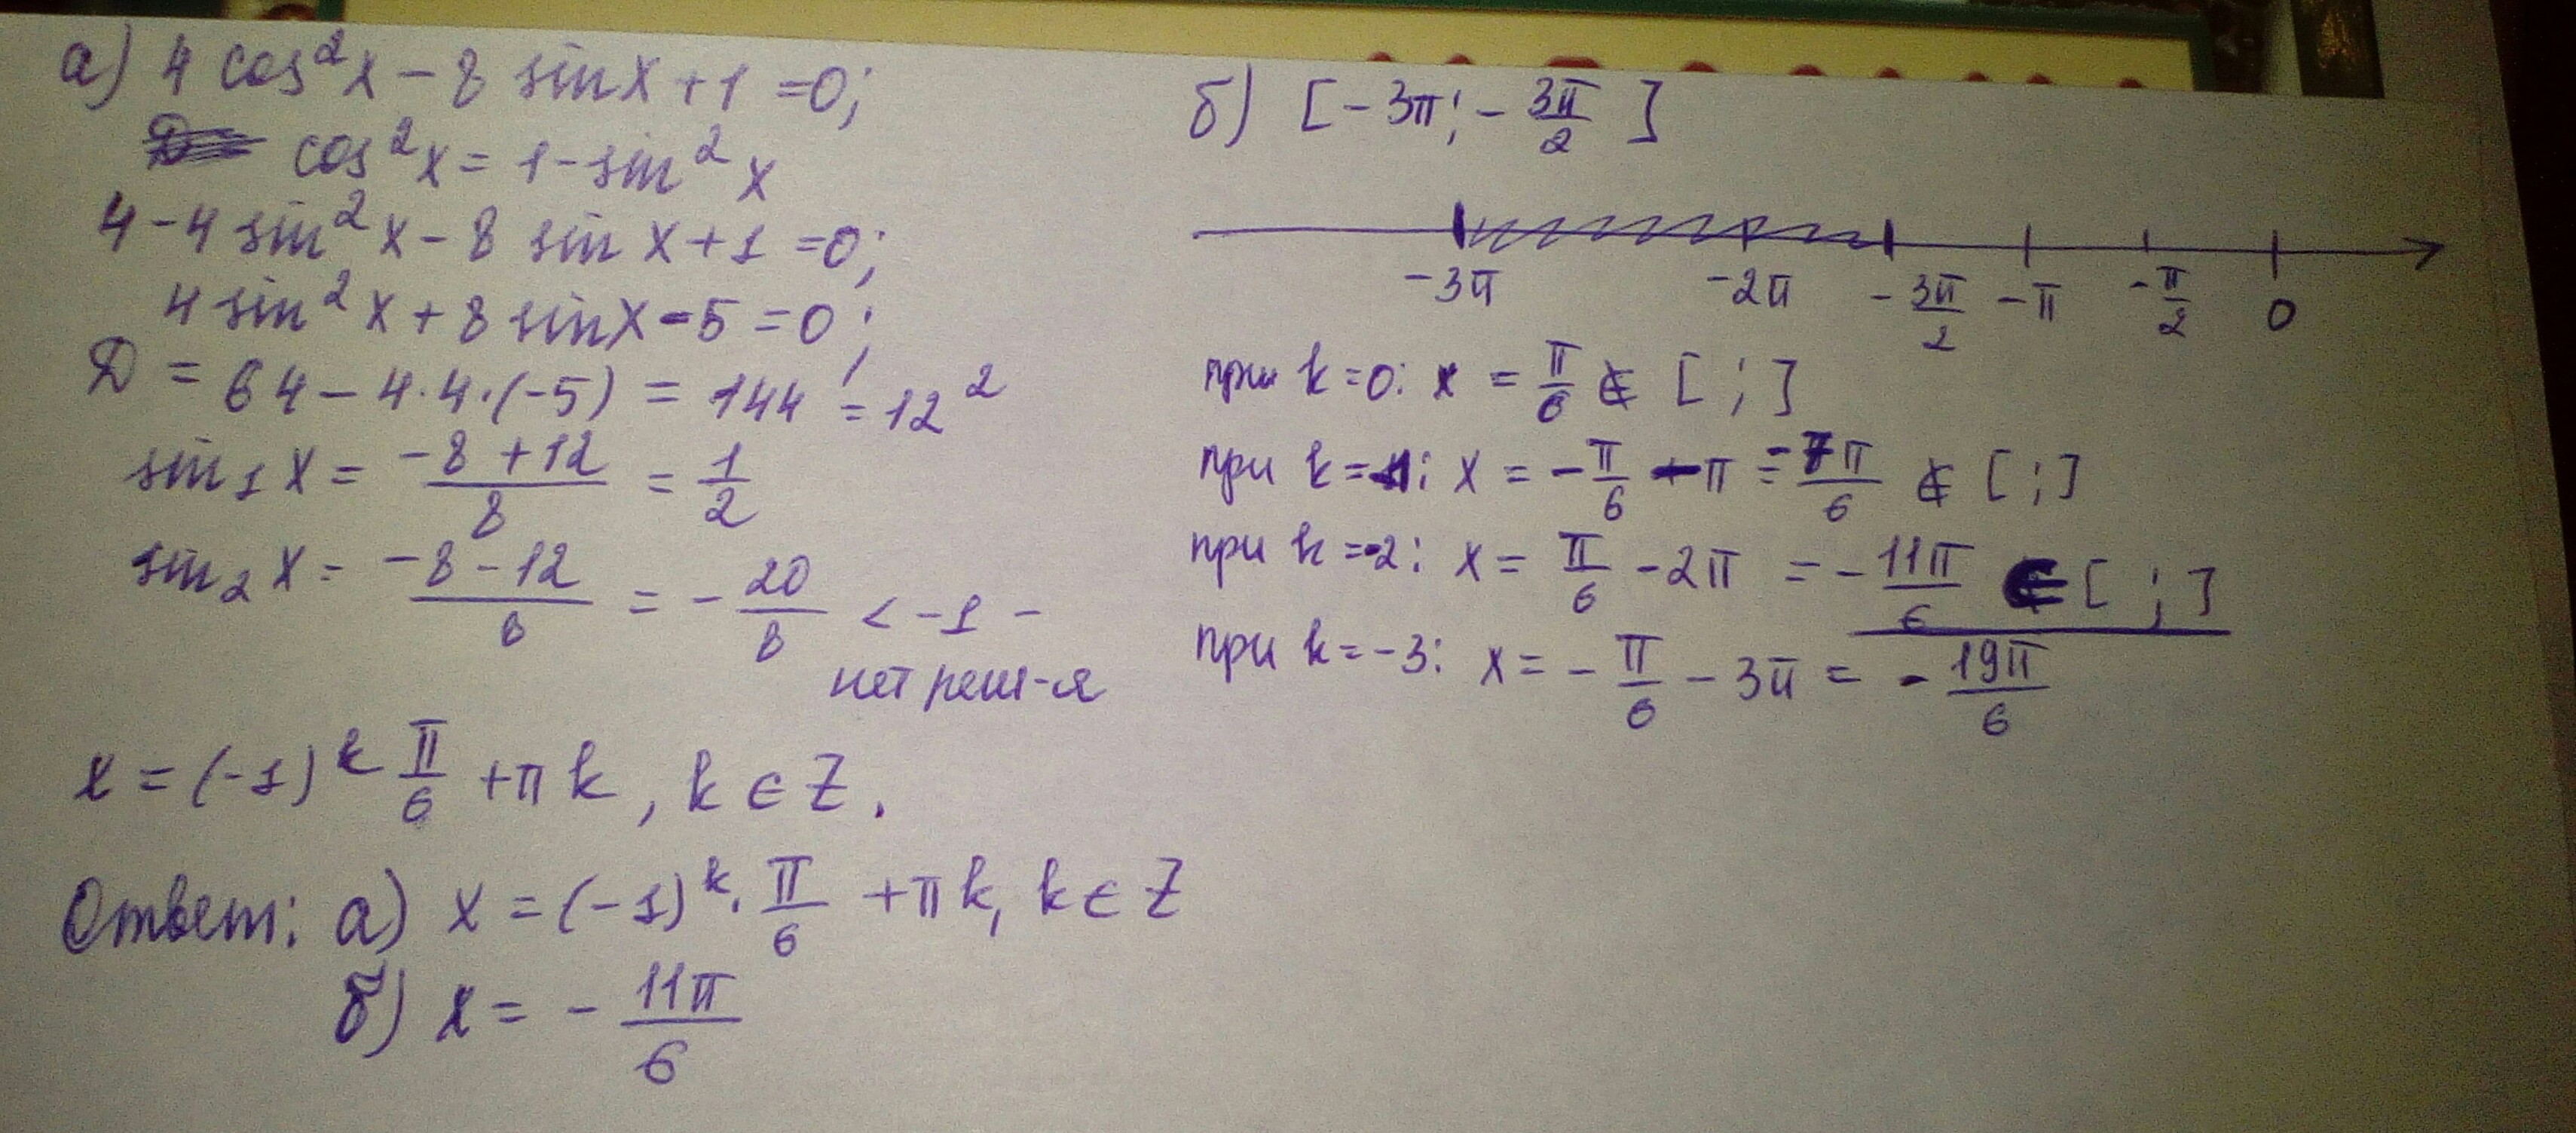 7x2 5x 1 0. Sin2x cos Pi 2 x корень из 3. 2x Pi/4. Cos 4x Pi 4 корень из 2 2. Cos2x.